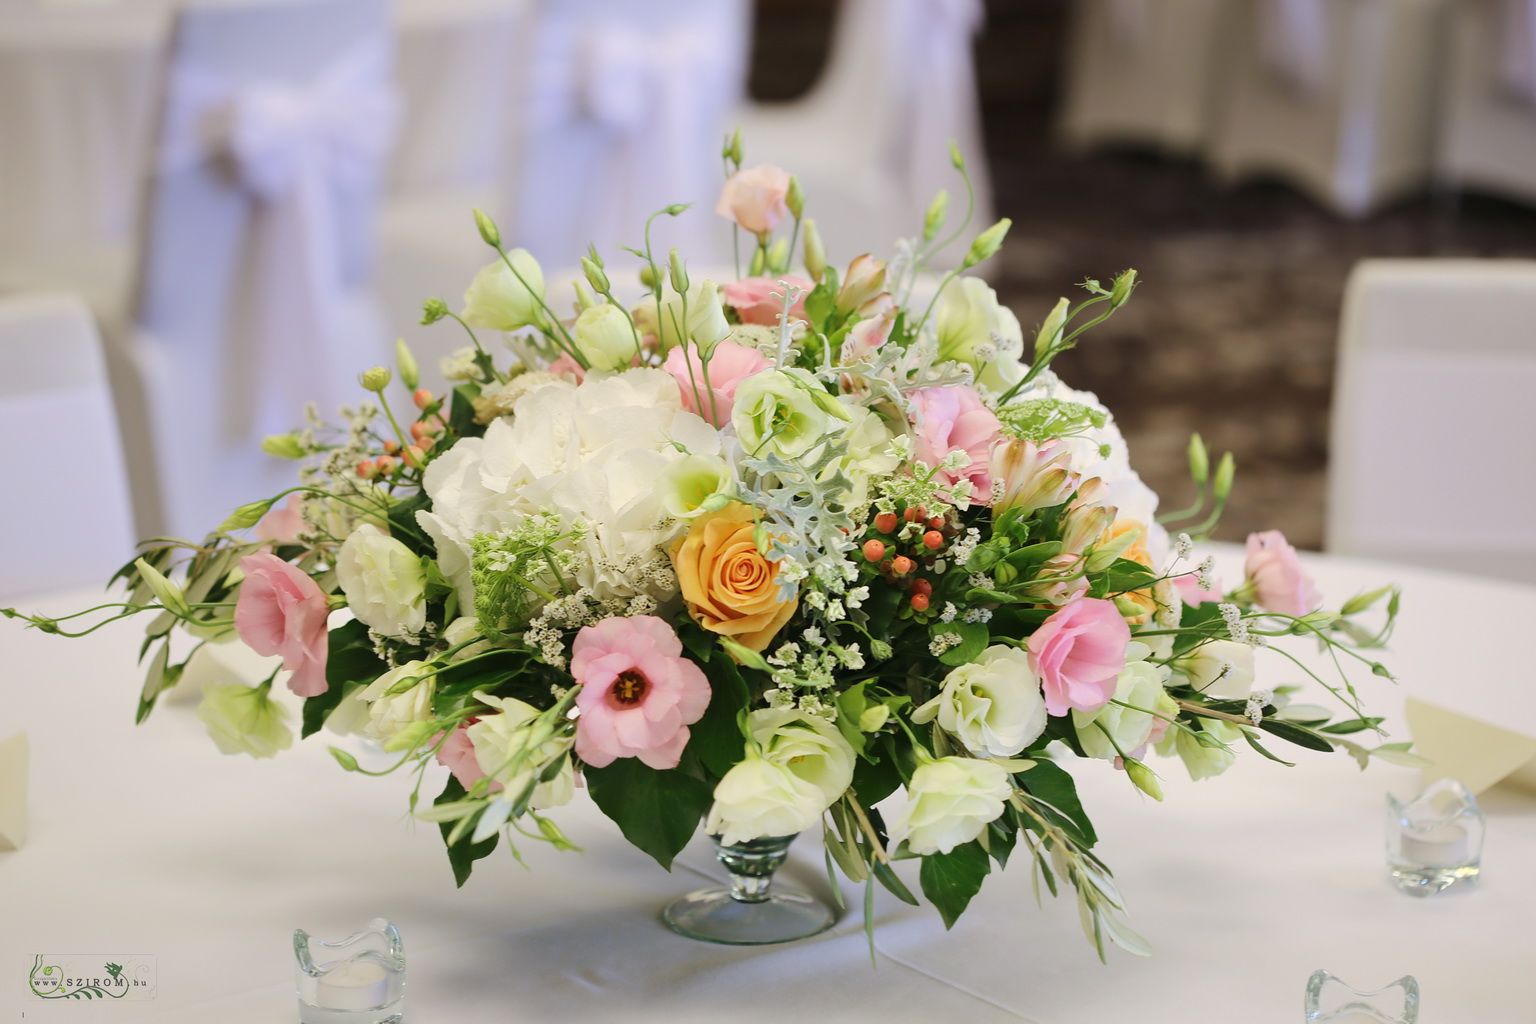 Esküvői asztaldísz, Larus Rendezvényközpont Budapest (liziantusz, rózsa, hortenzia, mezei virágok, rózsaszín, barack, krém)